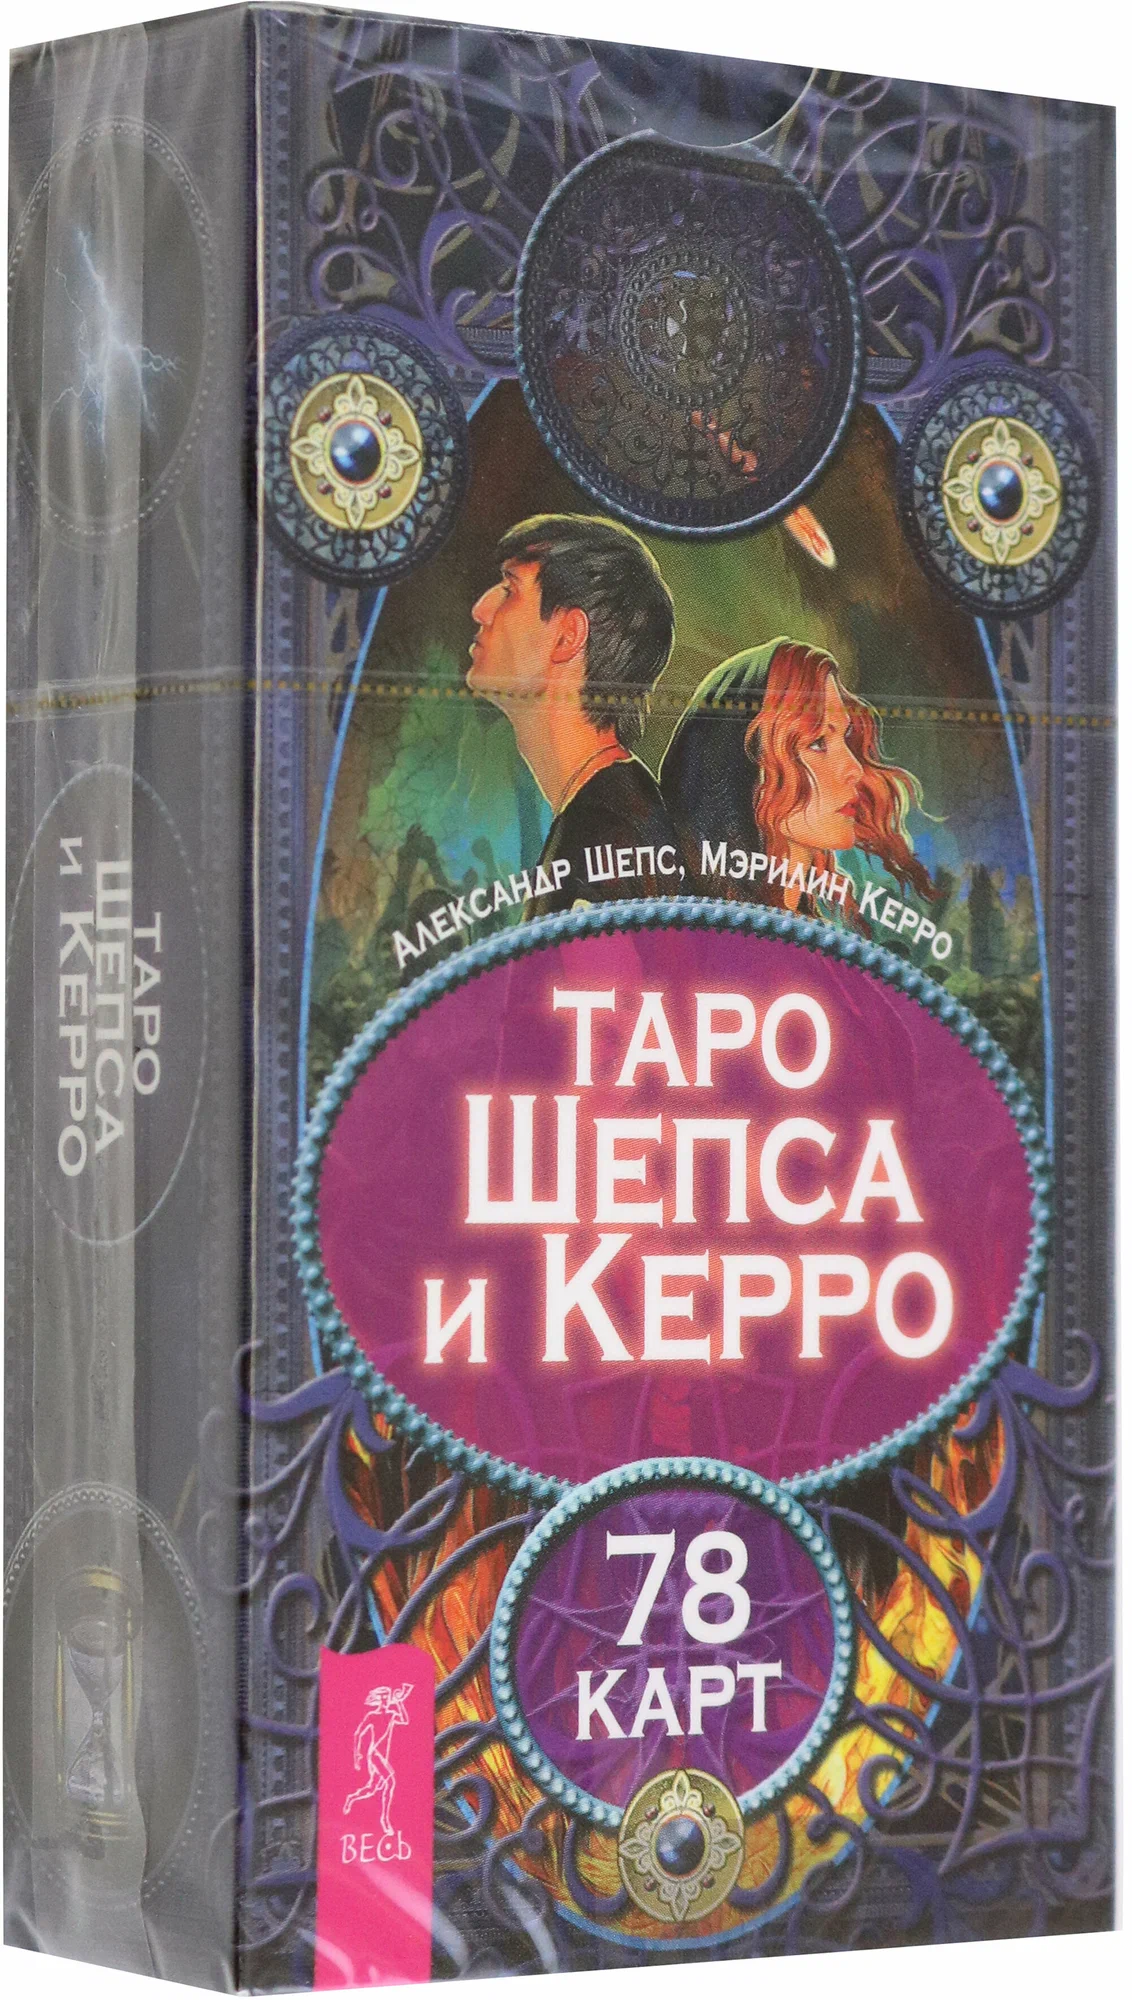 Таро Шепса и Керро (78 карт)